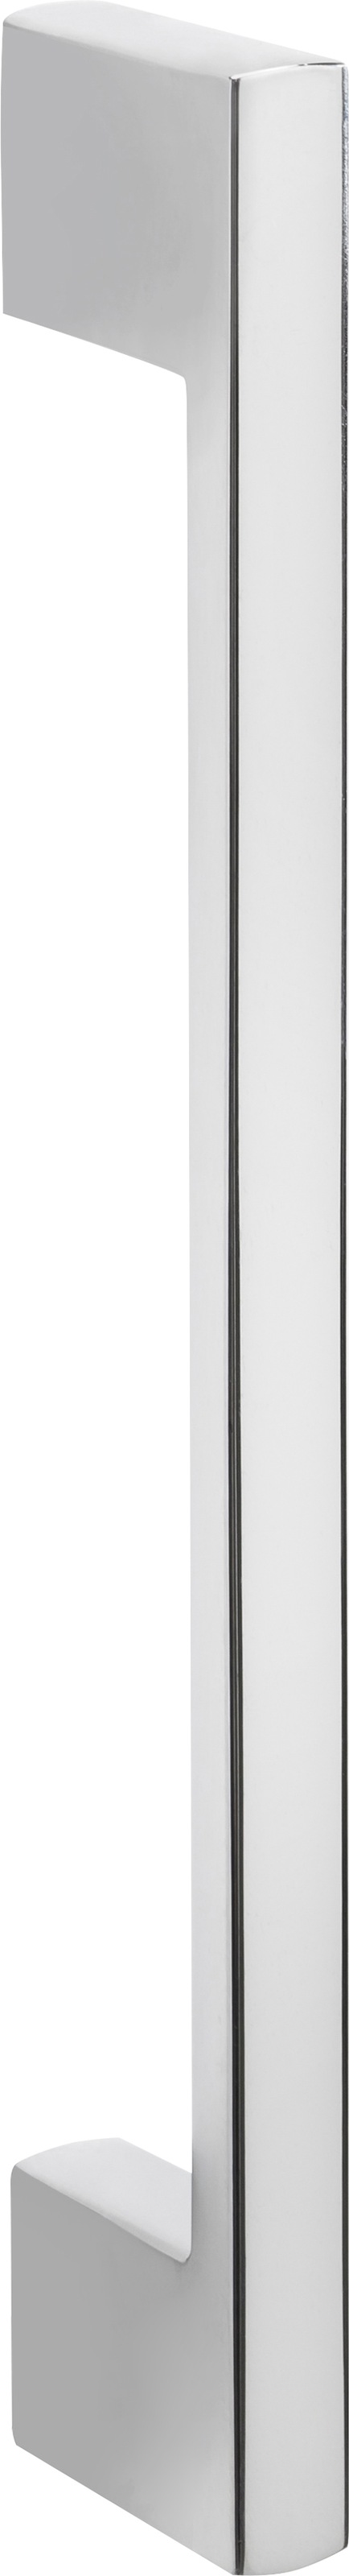 HELD MÖBEL Backofen/Kühlumbauschrank »Colmar«, 60 cm breit, 165 cm hoch,  für Einbaukühlschrank und Einbaubackofen bei OTTO | Backofenumbauschränke